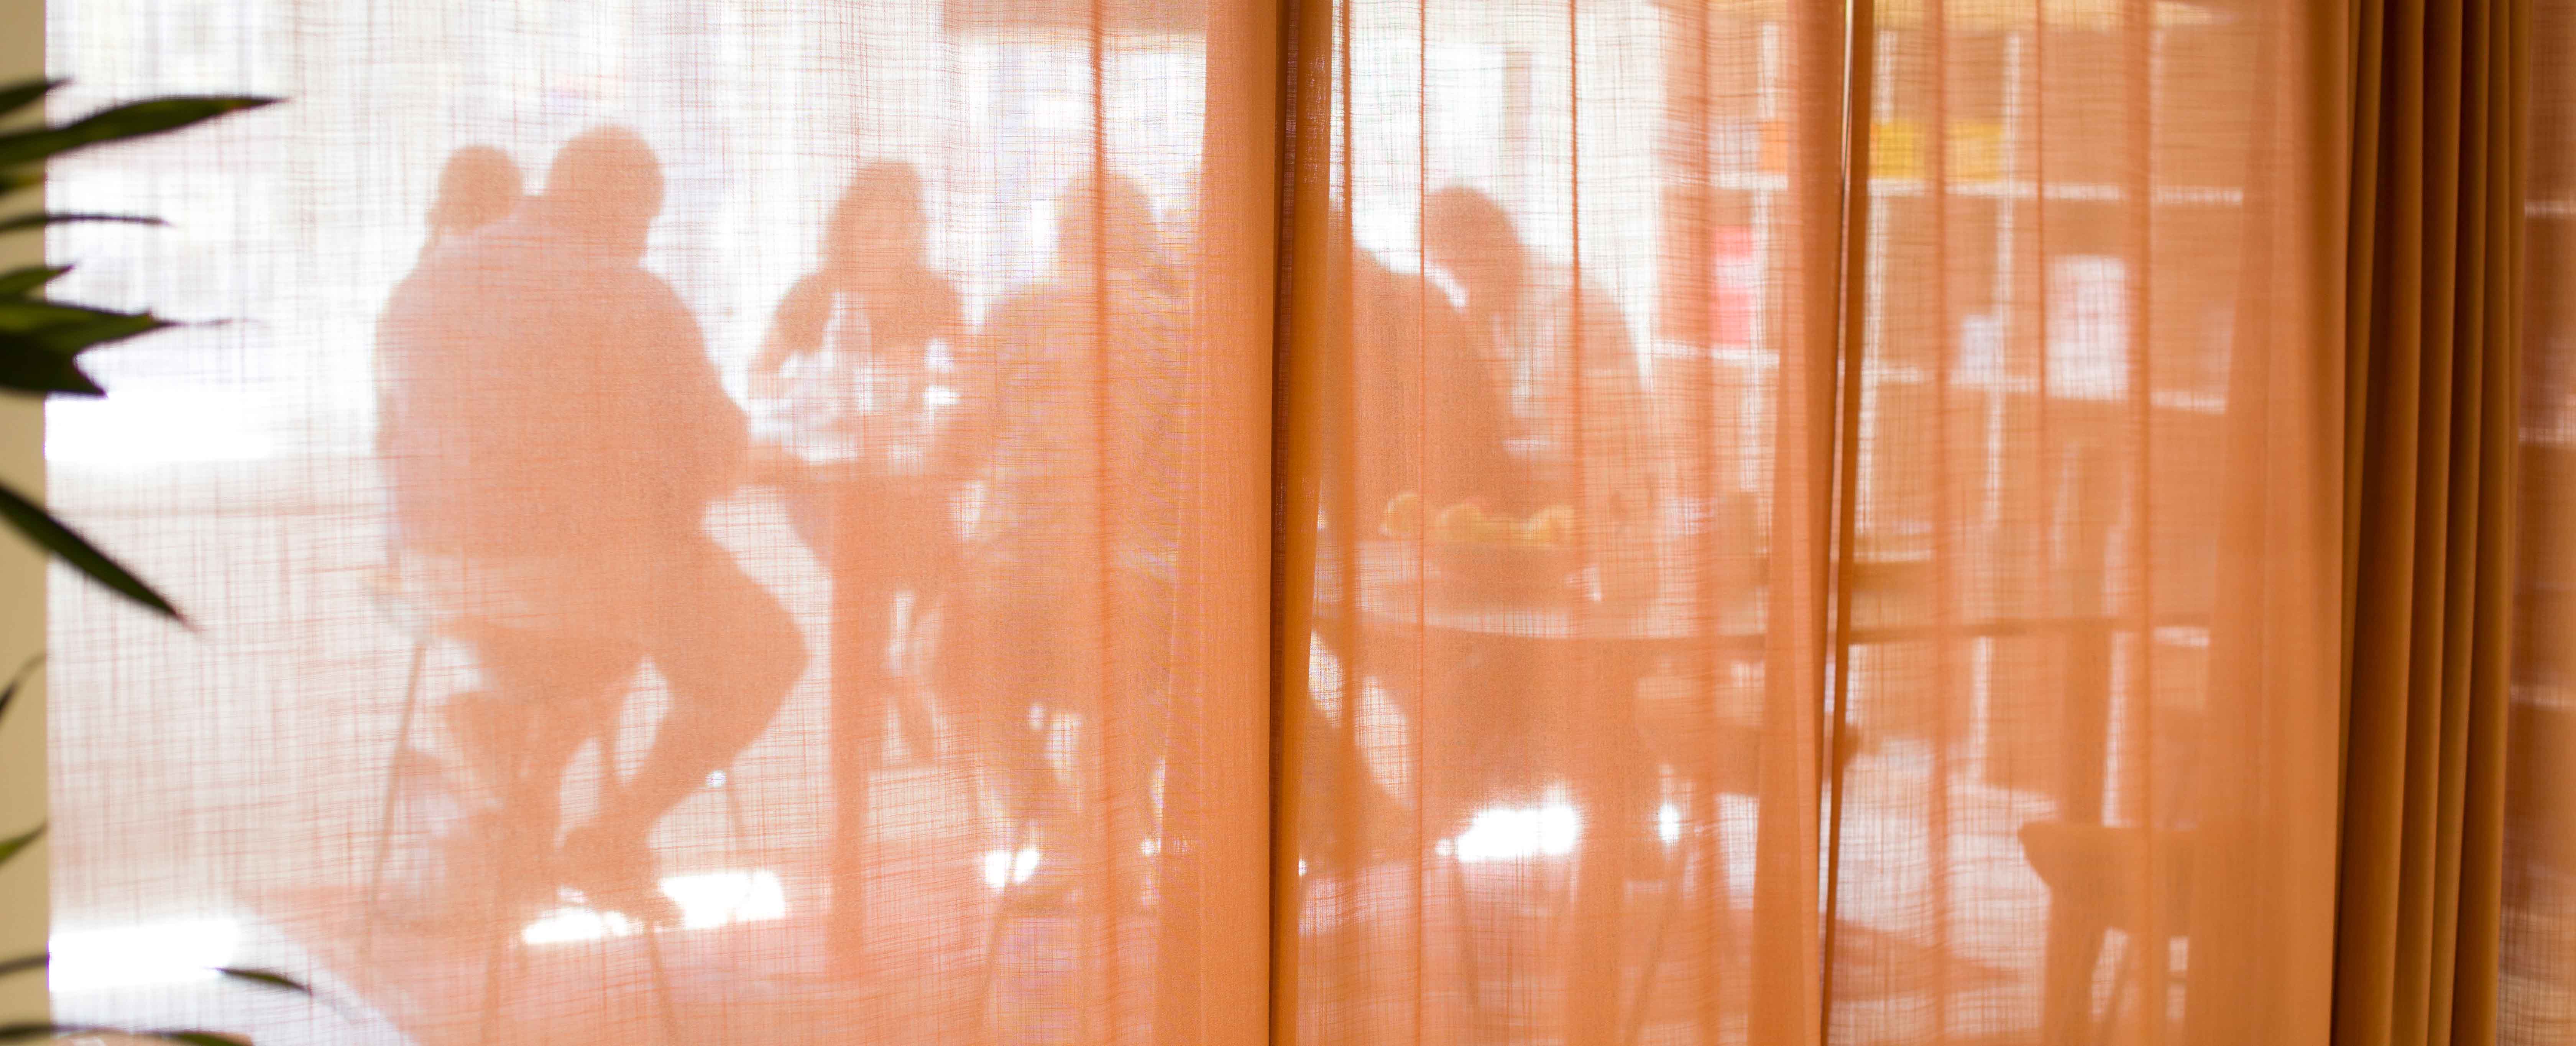 Bakom ett oranget skynke syns sju personer som sitter runt ett bord och samtalar